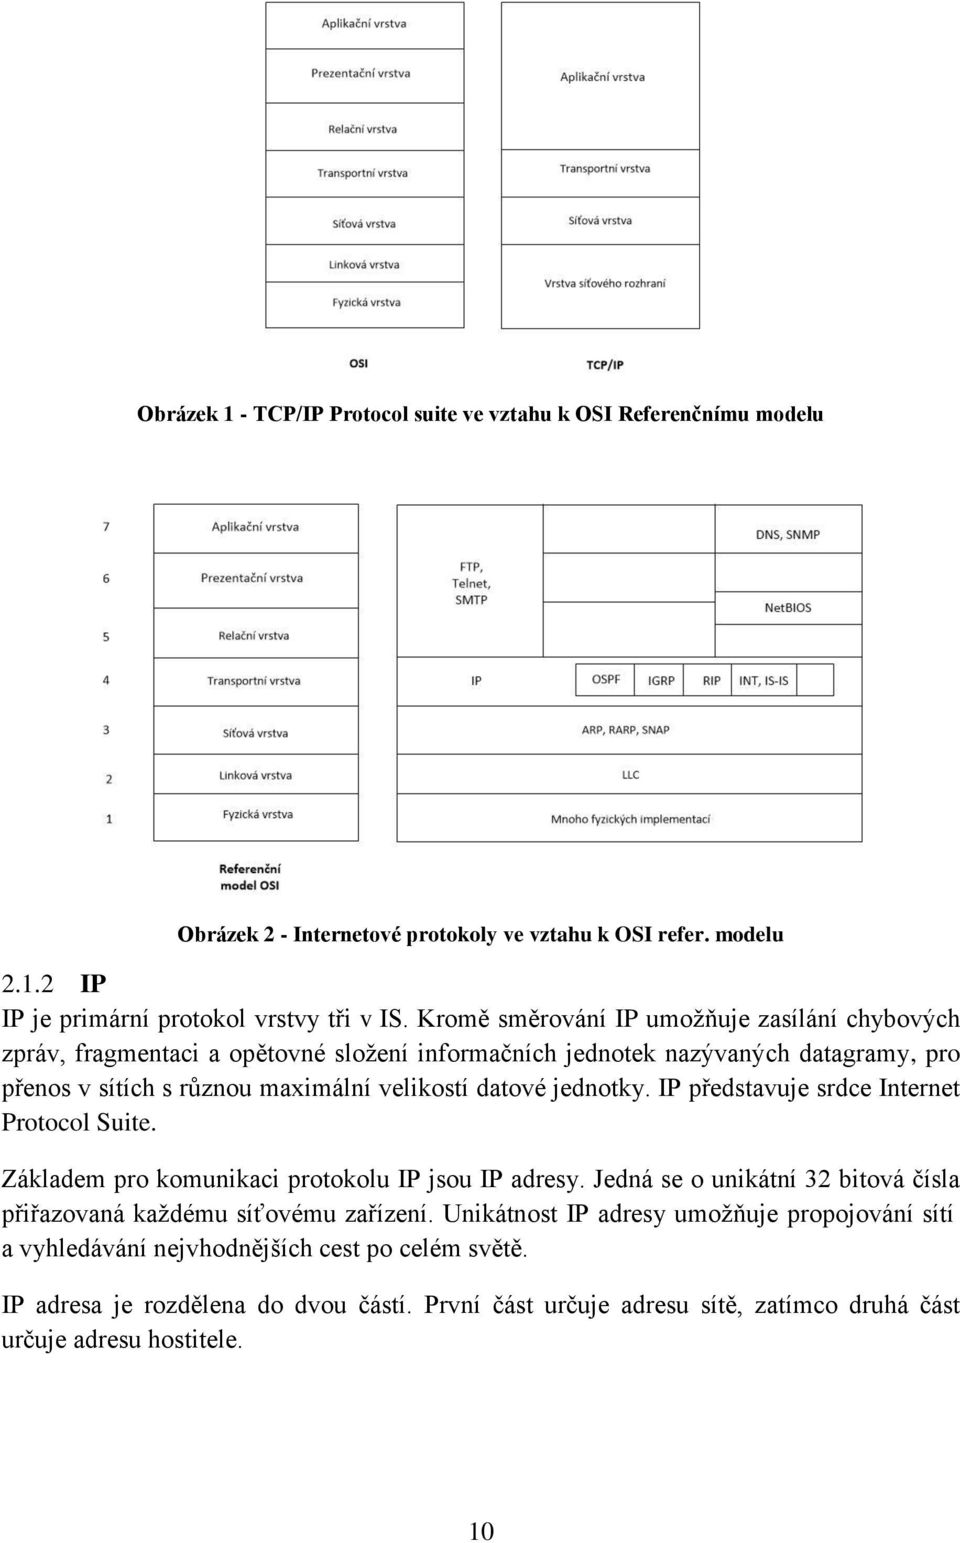 jednotky. IP představuje srdce Internet Protocol Suite. Základem pro komunikaci protokolu IP jsou IP adresy. Jedná se o unikátní 32 bitová čísla přiřazovaná každému síťovému zařízení.